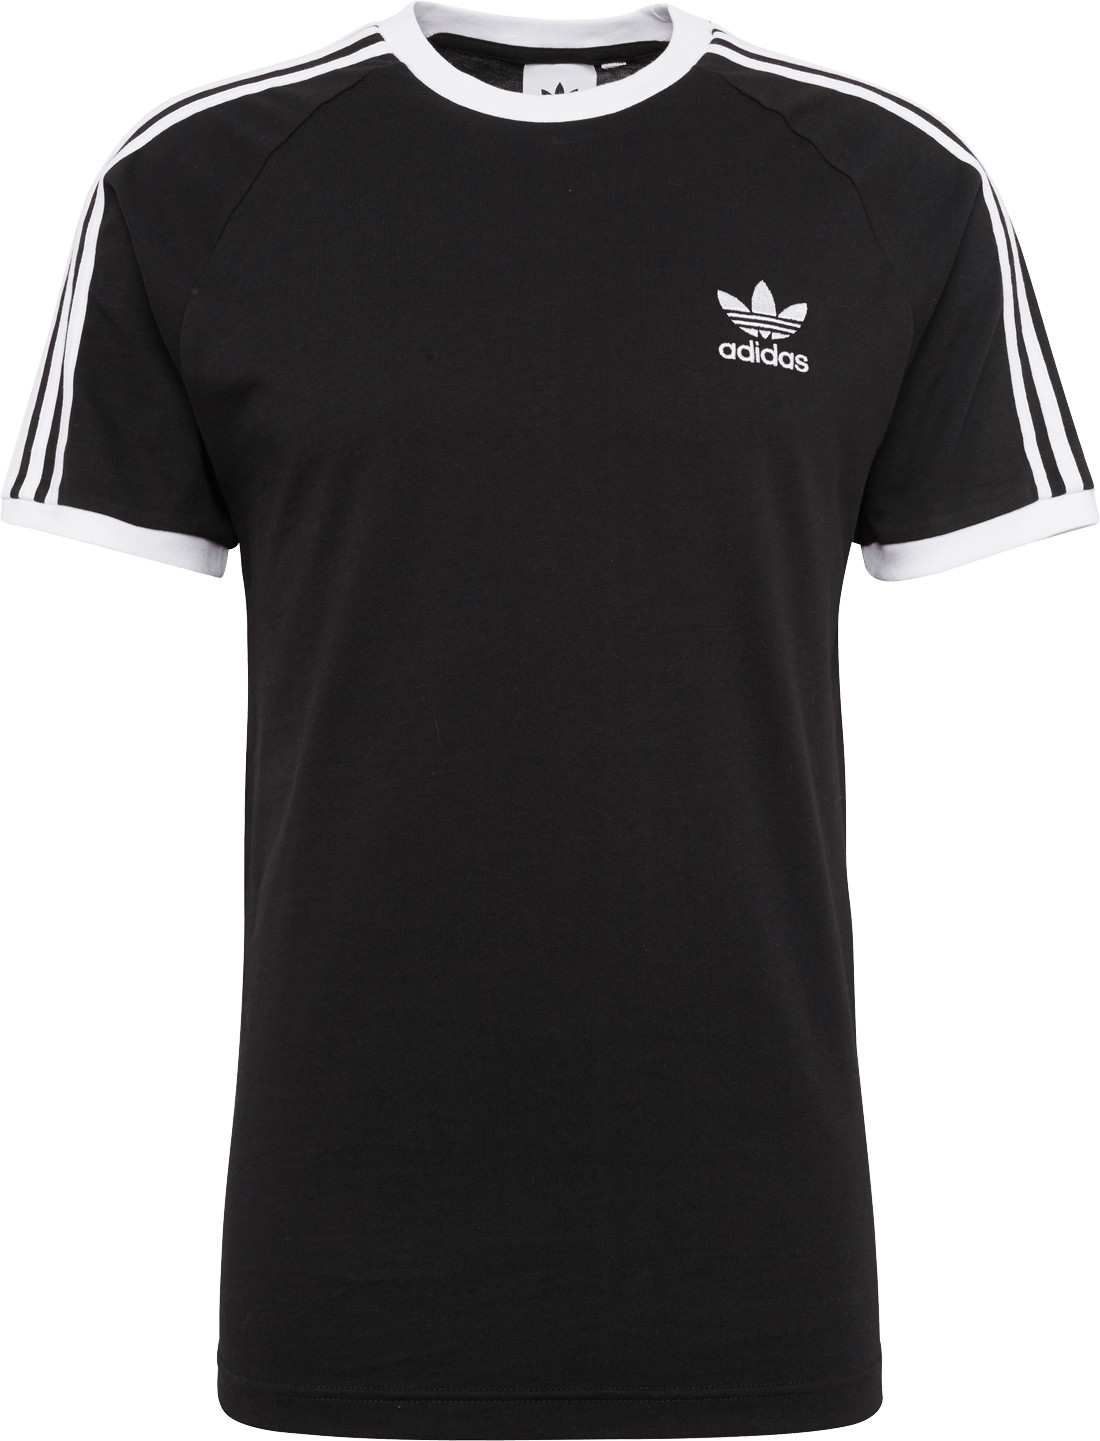 Adidas 3-Stripes T-Shirt black